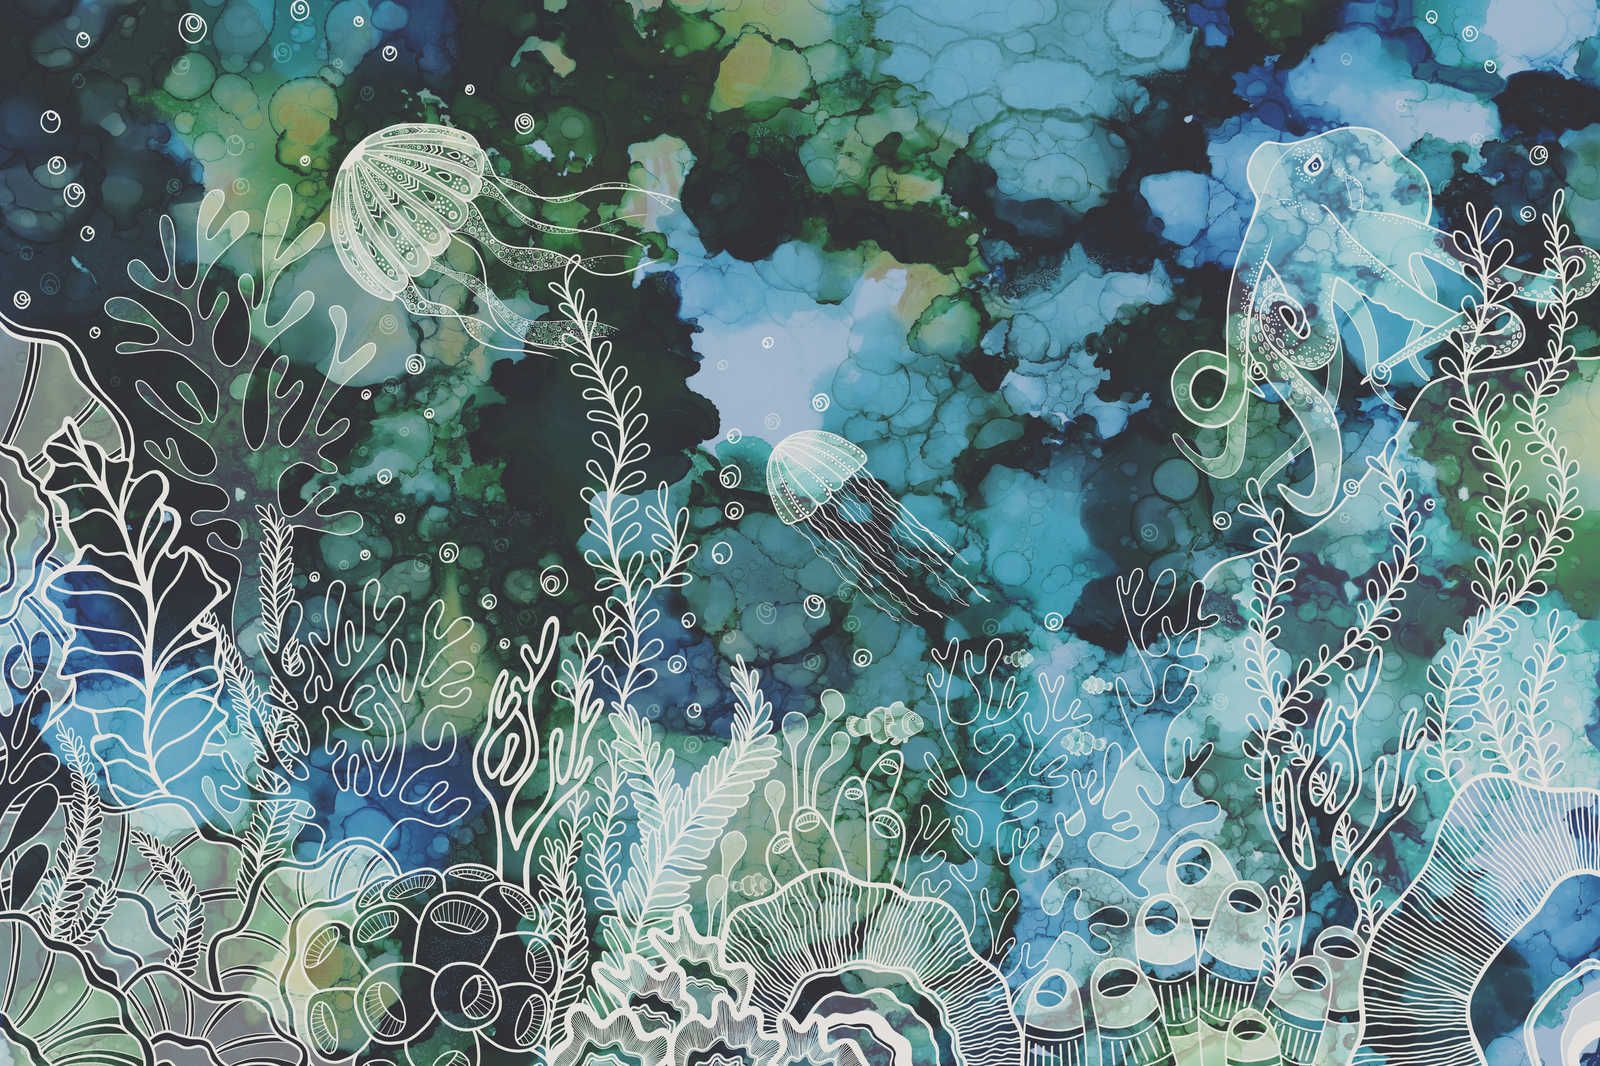             Tableau toile avec récif corallien sous-marin en couleurs acryliques - 0,90 m x 0,60 m
        